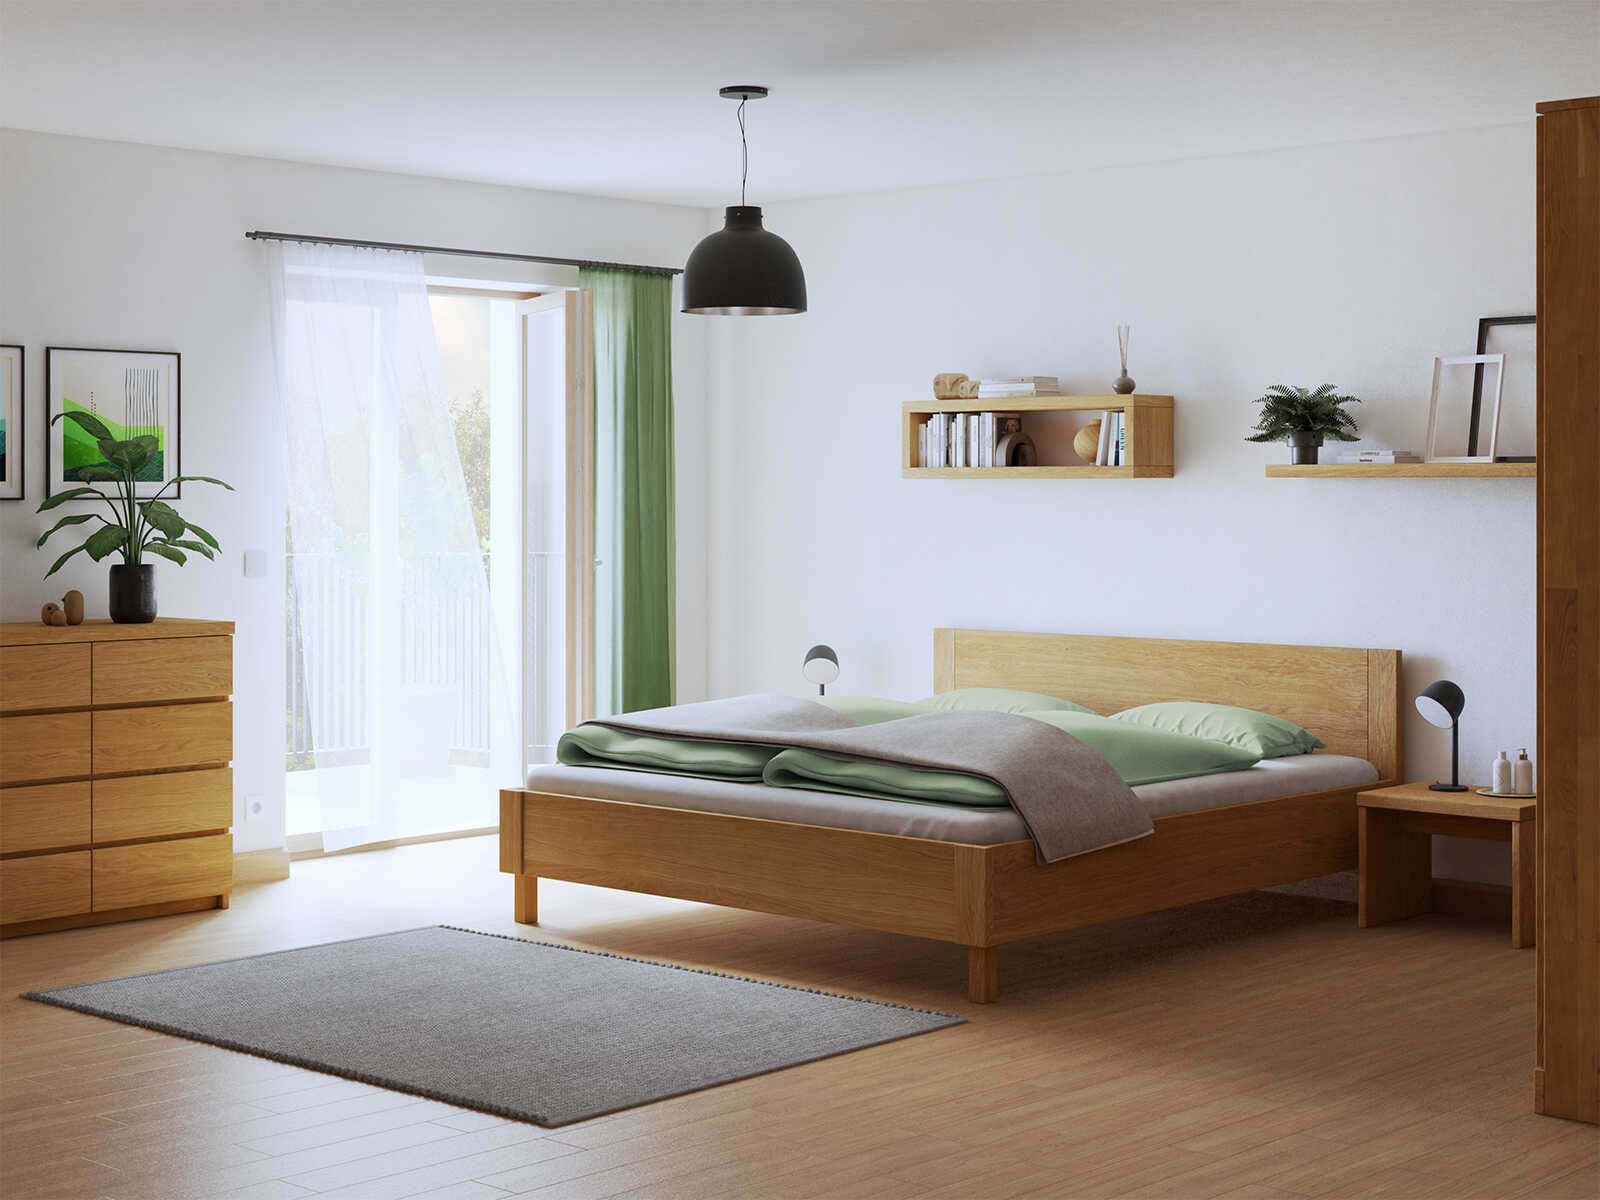 Schlafzimmer mit Bett „Max“ aus Eiche in 180 x 200 cm mit geradem Kopfteil